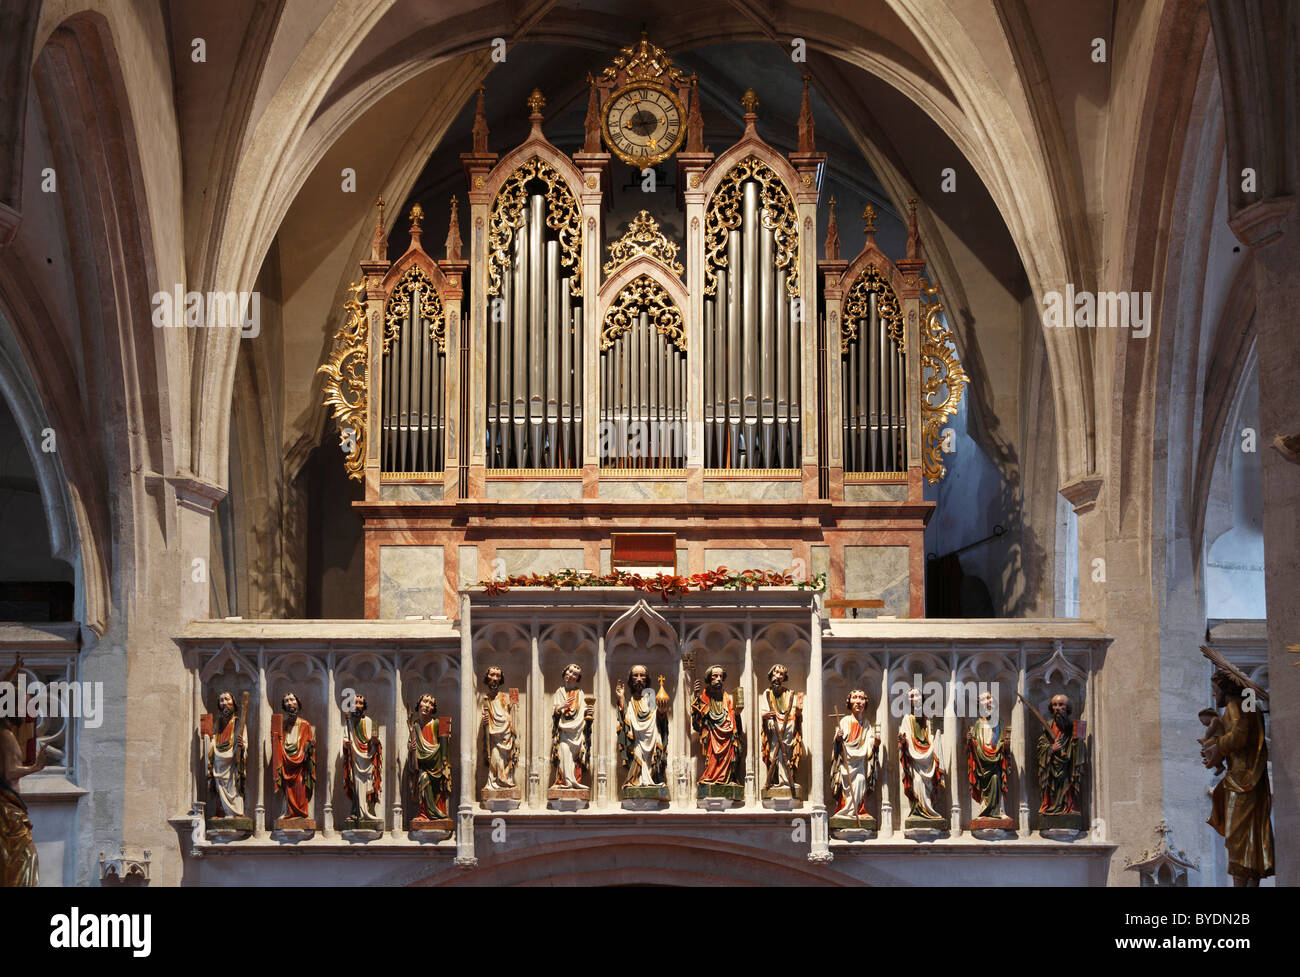 Le Christ avec les douze apôtres et de l'orgue dans l'église paroissiale, Spitz, Waldviertel Wachau, Forêt, trimestre, Basse Autriche Banque D'Images